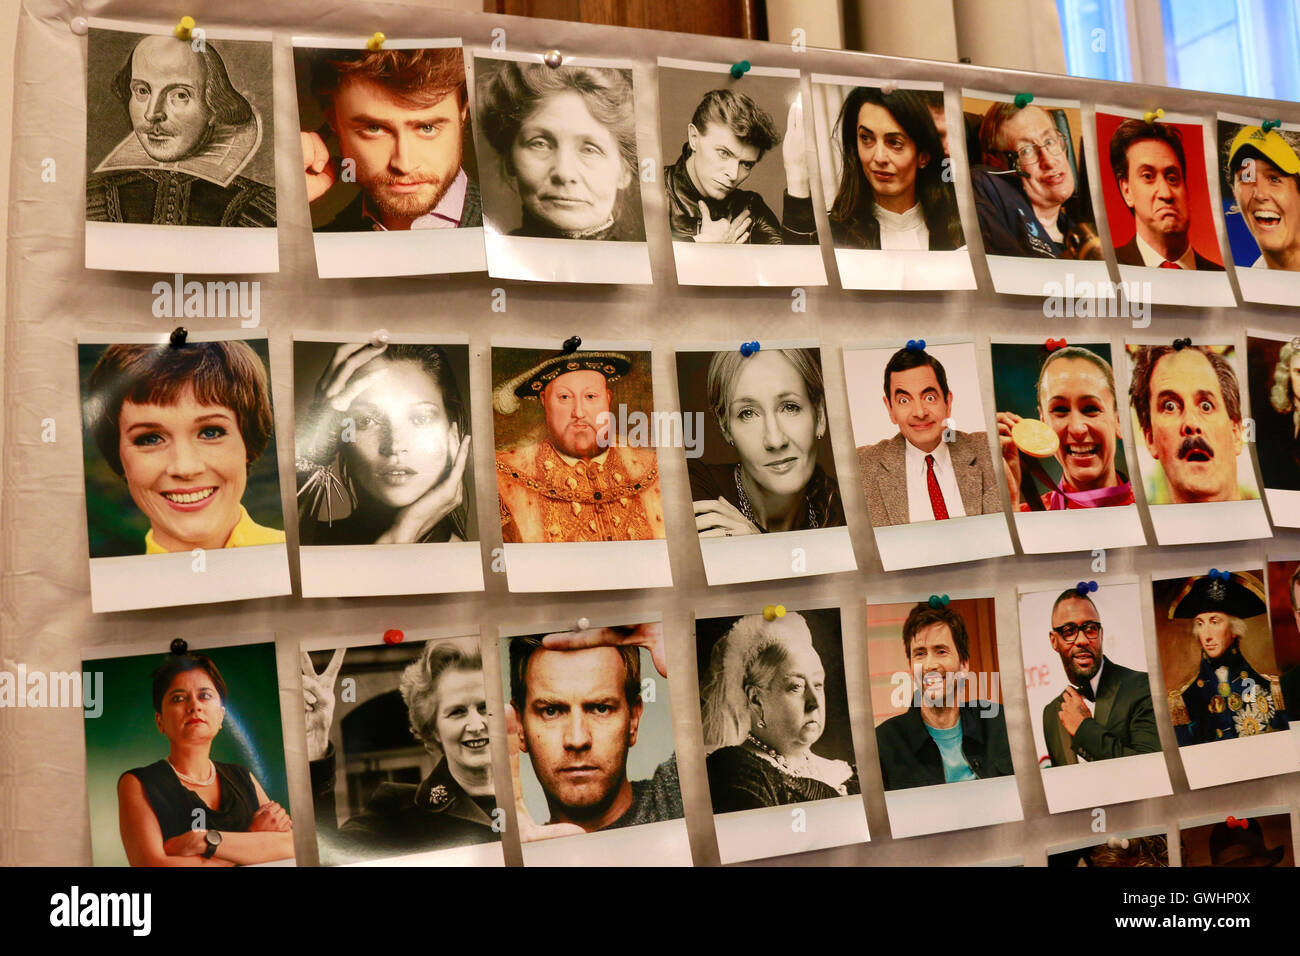 Werbung gegen den Brexit: Bilder britischer Prominenter wie Mr Bean, Henry 8, Joanne K. Rowling, Kate Moss, William Shakespeare, Stock Photo